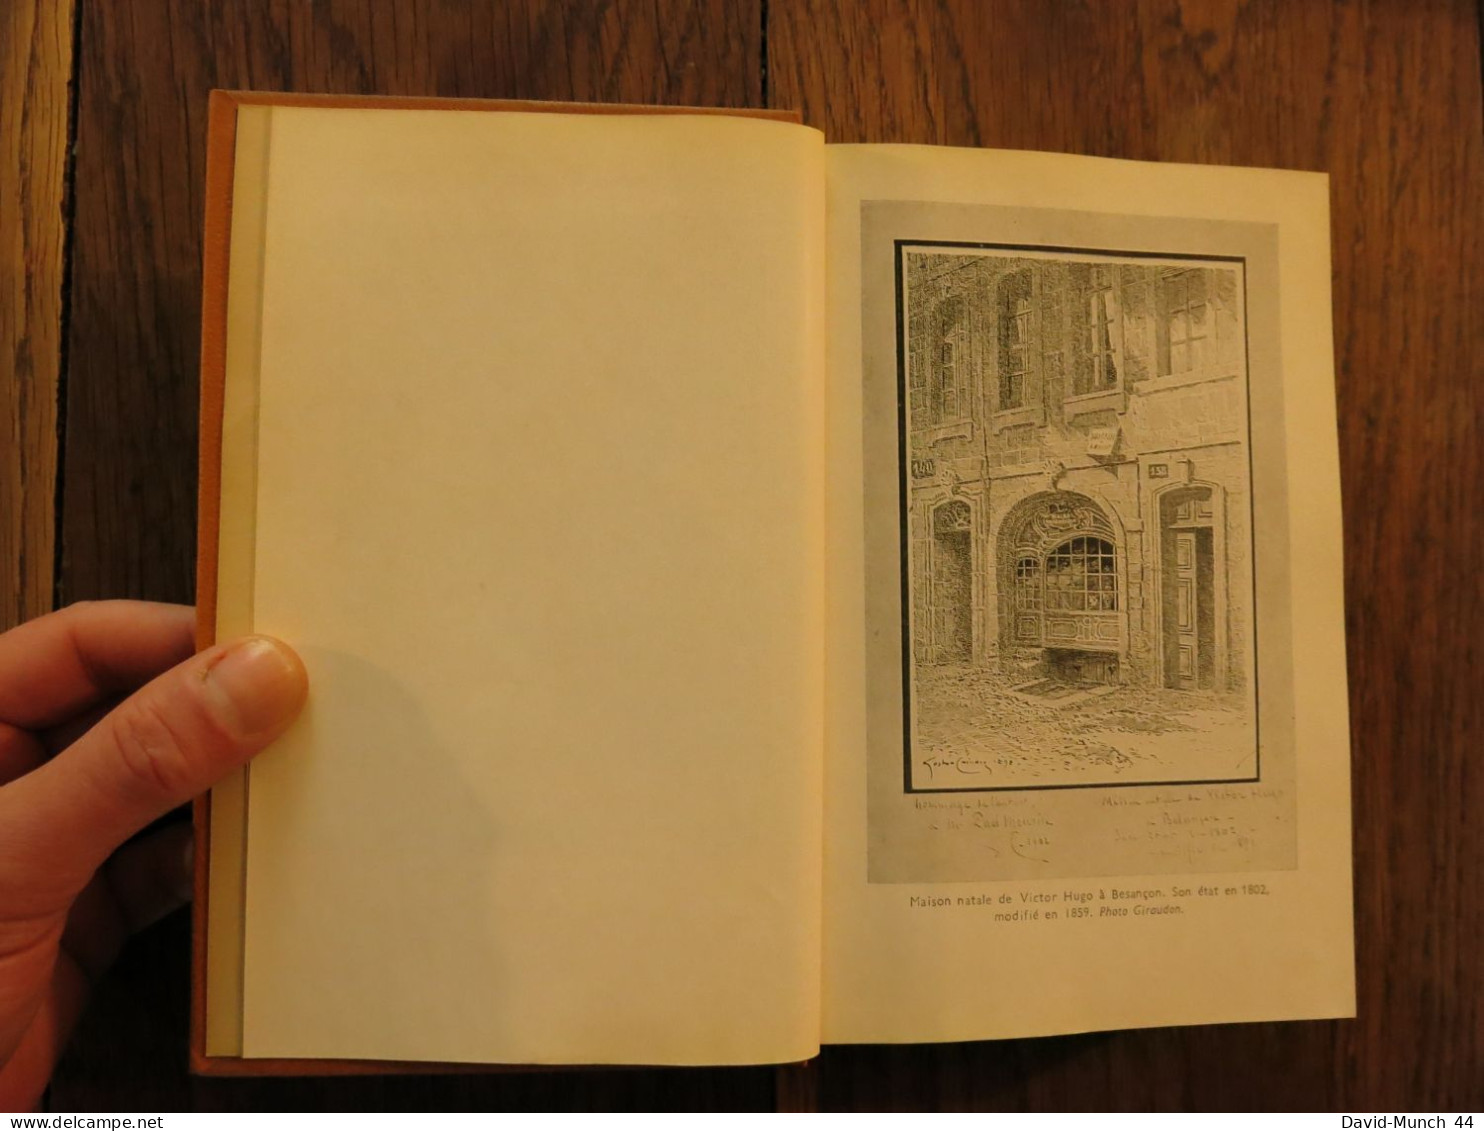 Notre-Dame De Paris De Victor Hugo. Editions Baudelaire, Collection Les Chefs-d'œuvre Du Génie Humain, Paris. 1968 - Auteurs Classiques